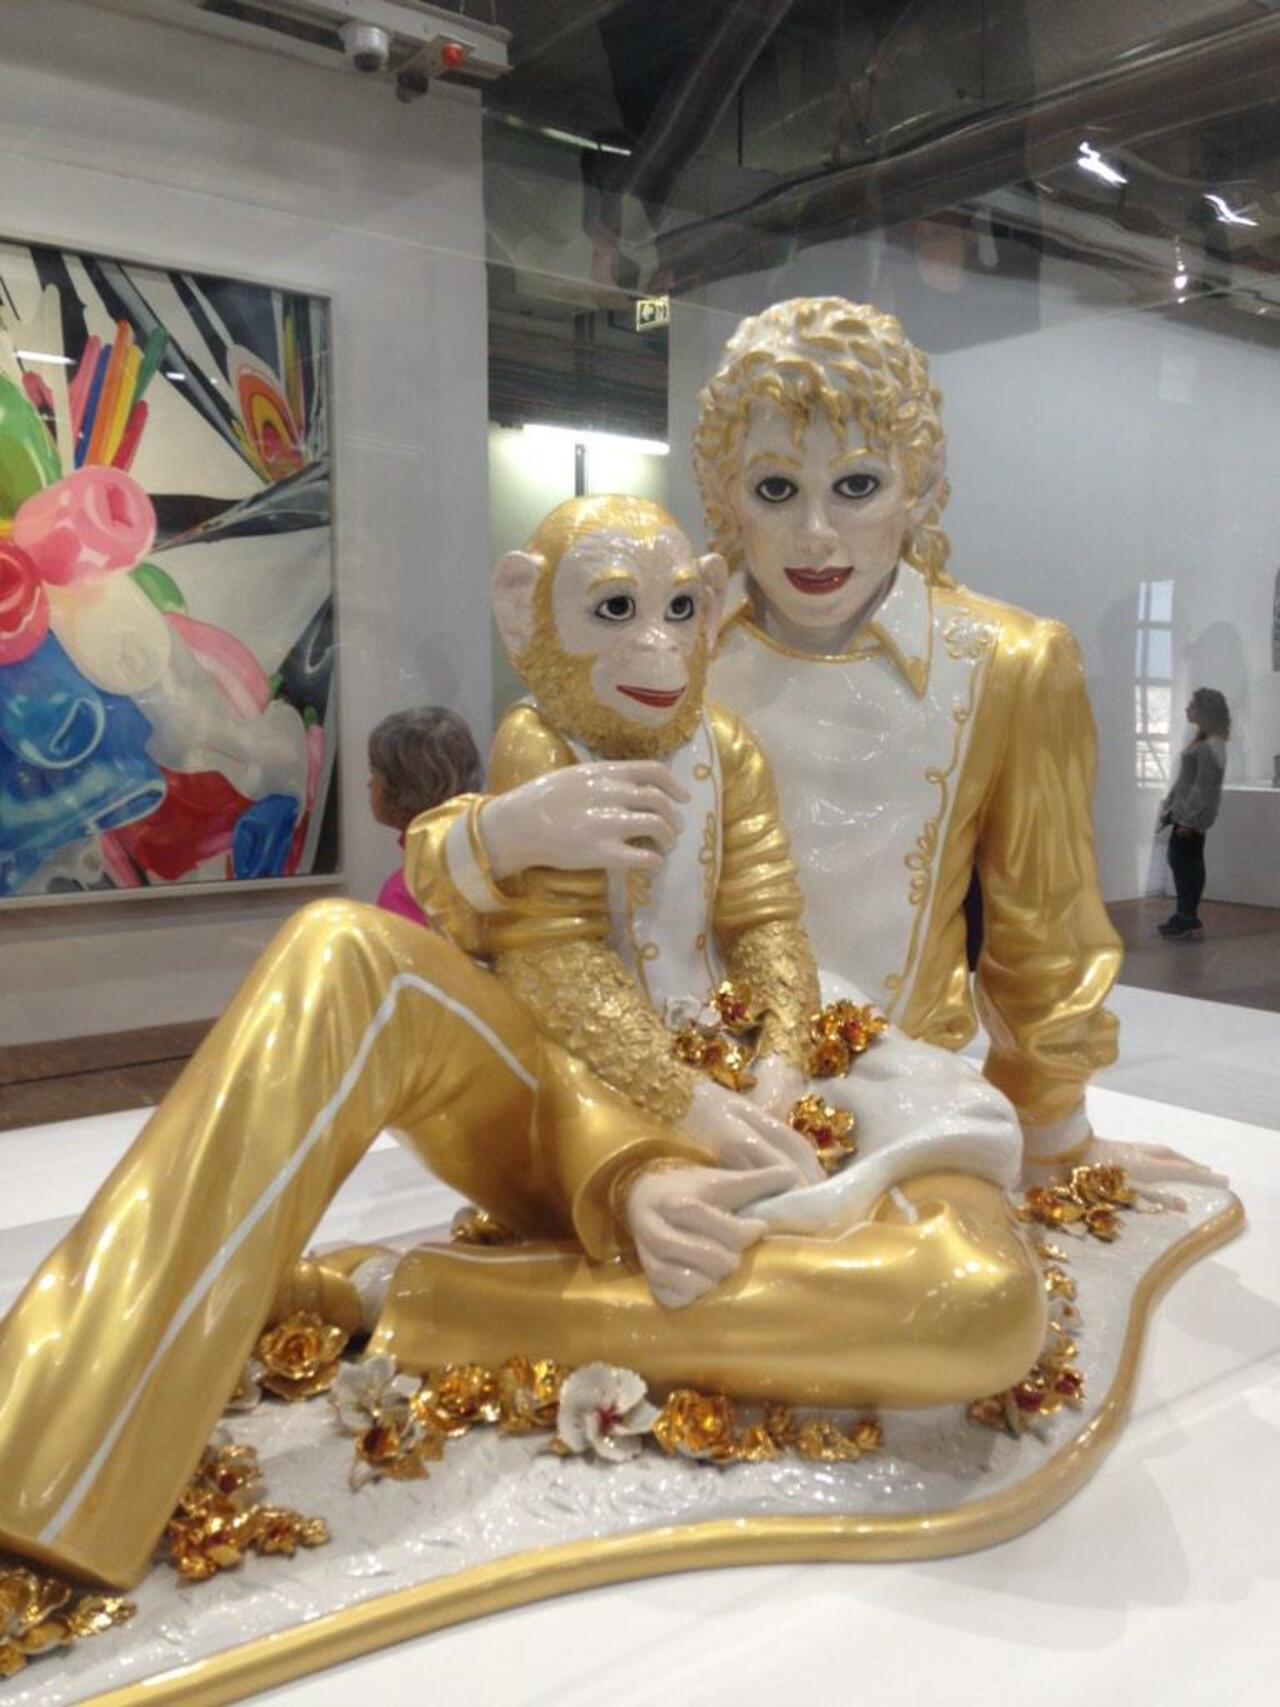 Dans son costume doré, le roi de la pop brille comme une étoile @JeffKoonsStudio @centrepompidou #jeffkoons #art http://t.co/BSNP5AXqBR